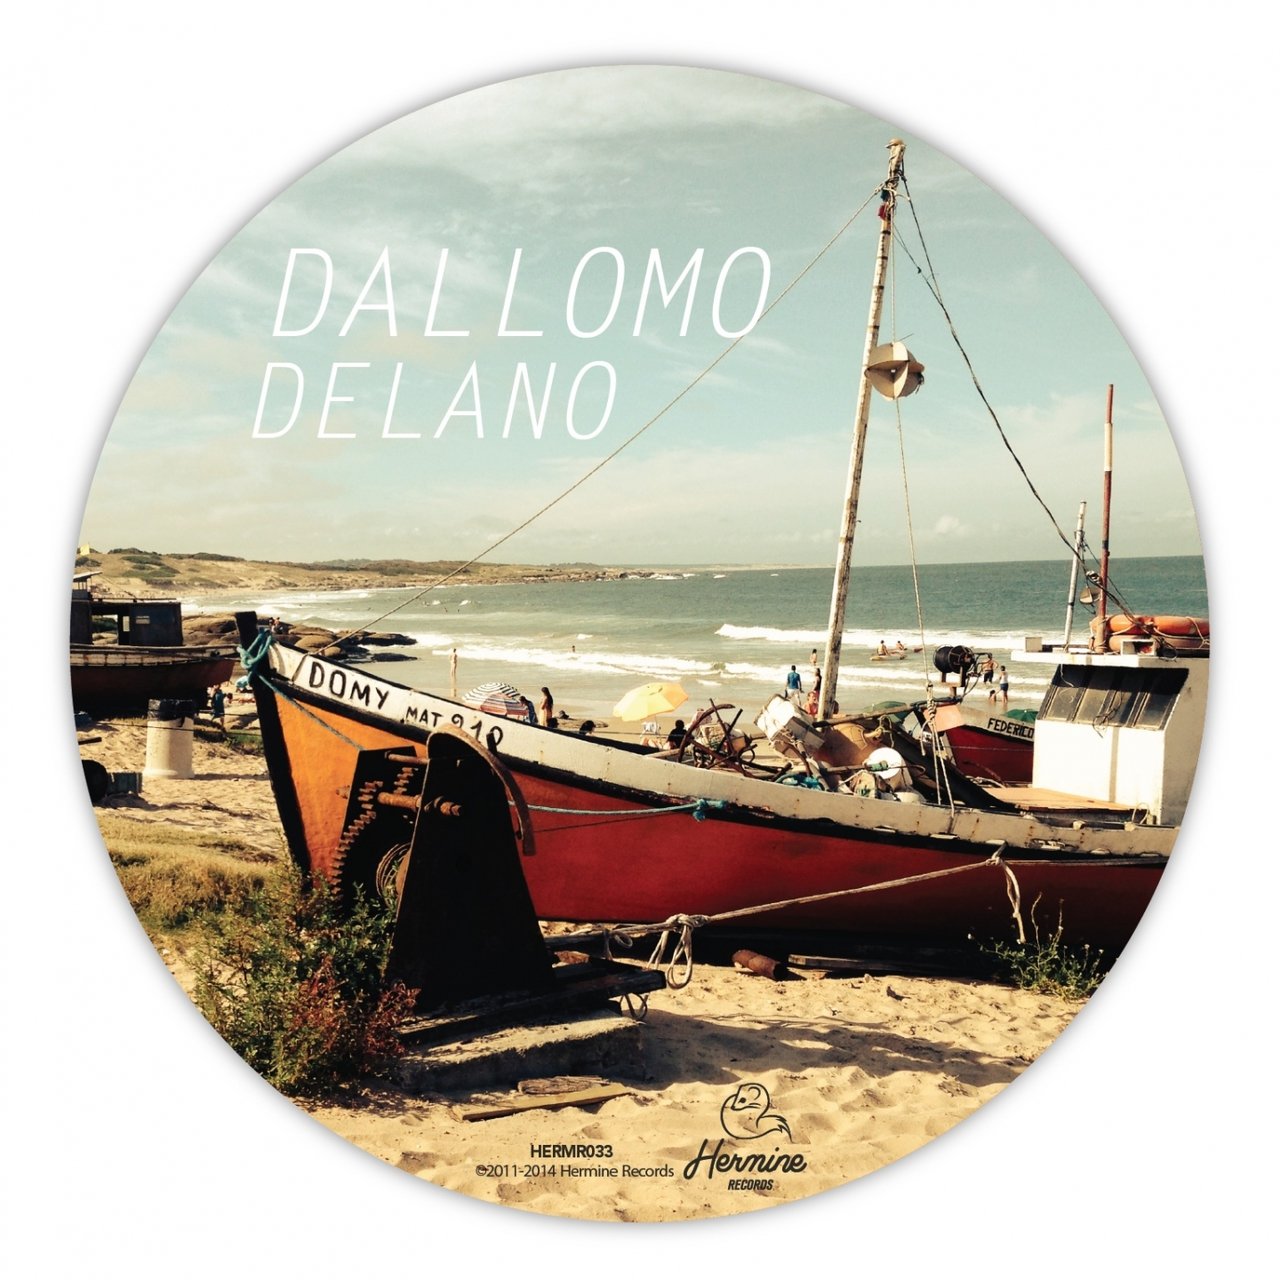 00 Dallomo - Delano Cover